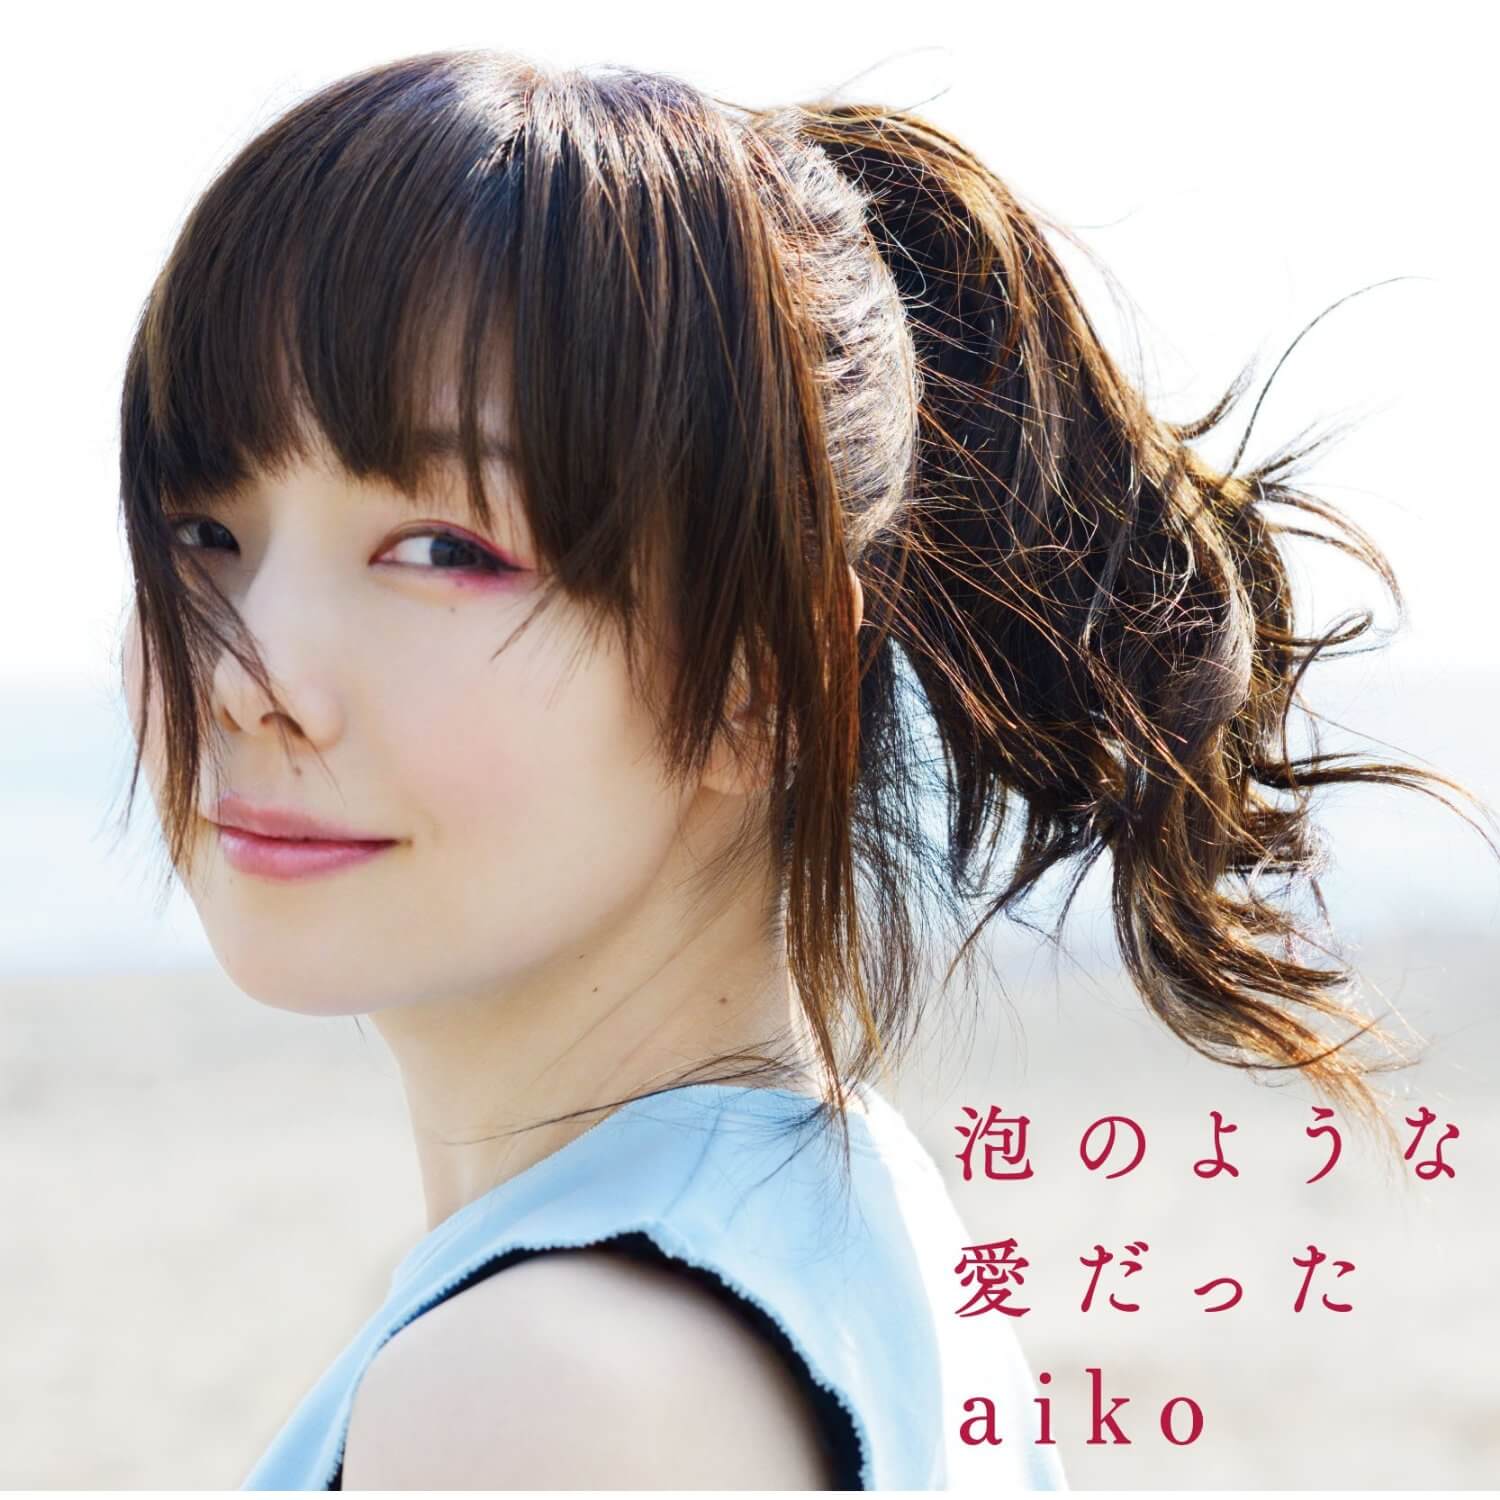 Aiko 泡のような愛だった 感想 ポップなのにaikoの想いが伝わる切ないアルバム Takkaaaaaの日記